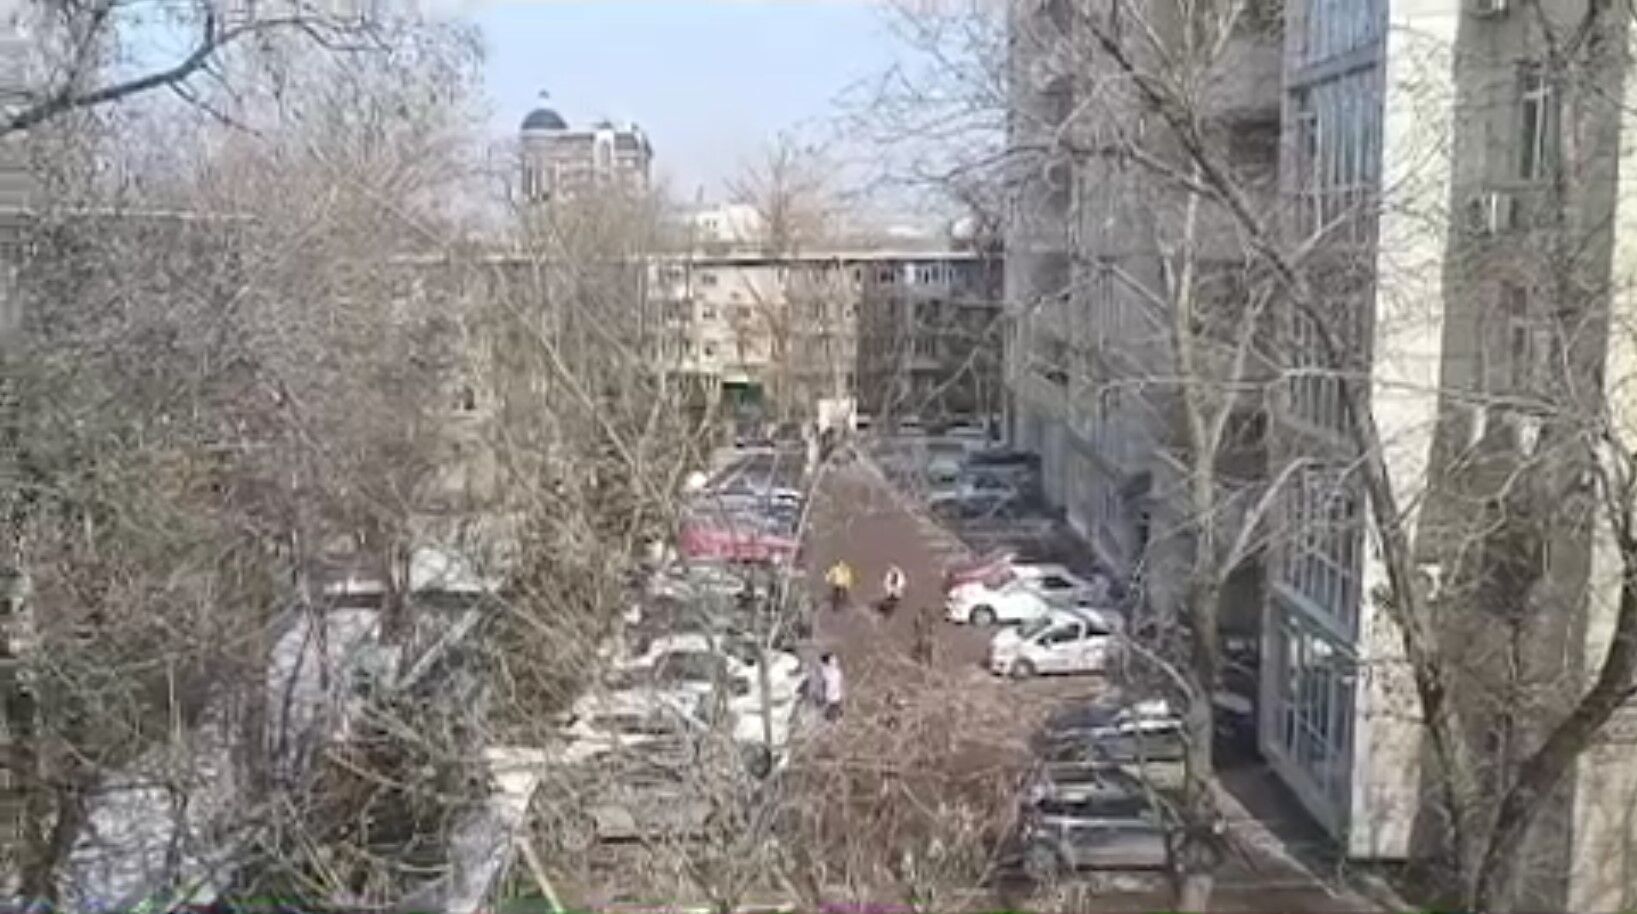 У квартирах хиталися меблі, люди вибігали на вулицю: у Казахстані стався землетрус магнітудою 6,1. Відео